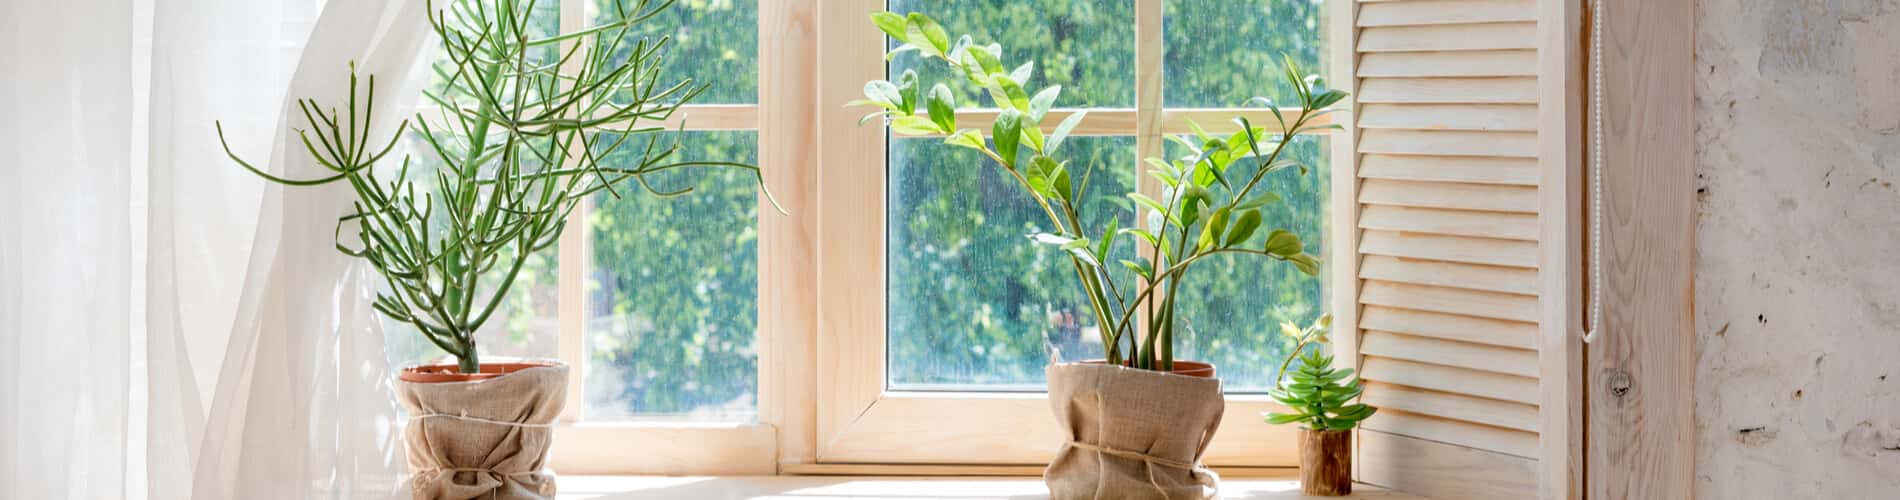 Topfpflanzen: Tipps zur Überwinterung drinnen und draussen